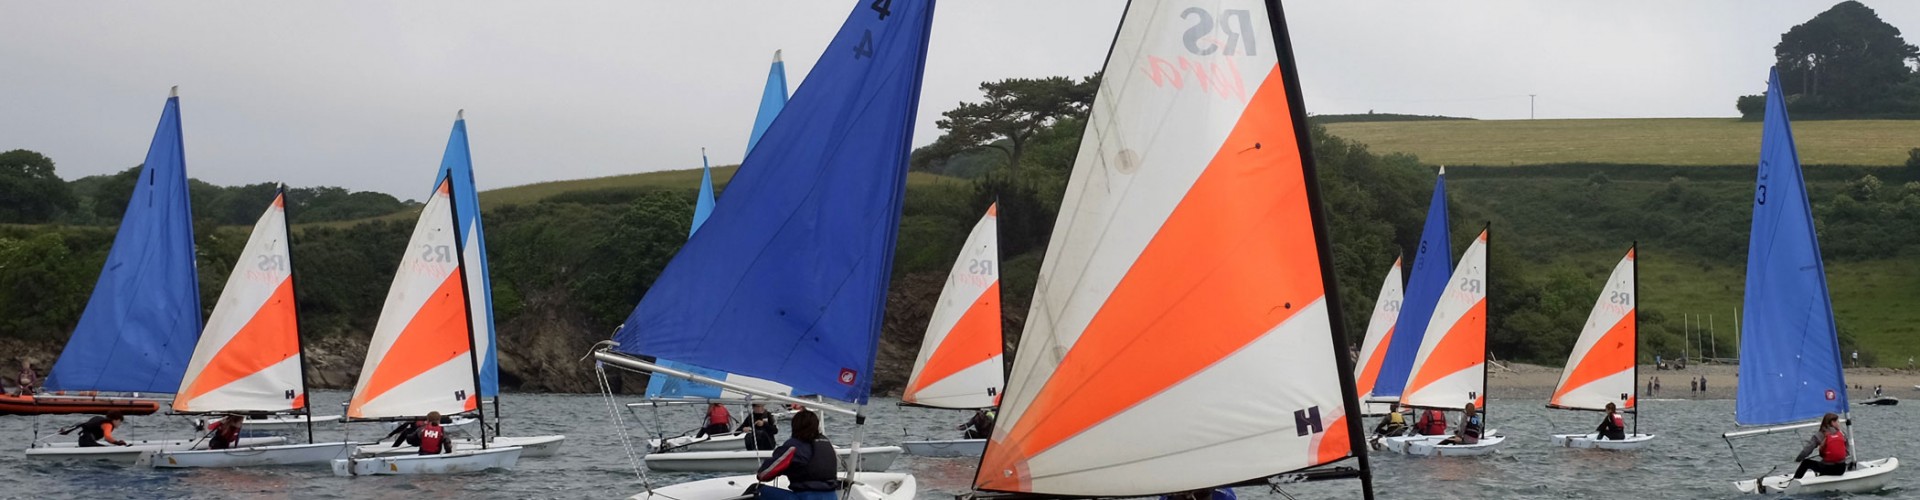 Children's Sailing Trust regatta